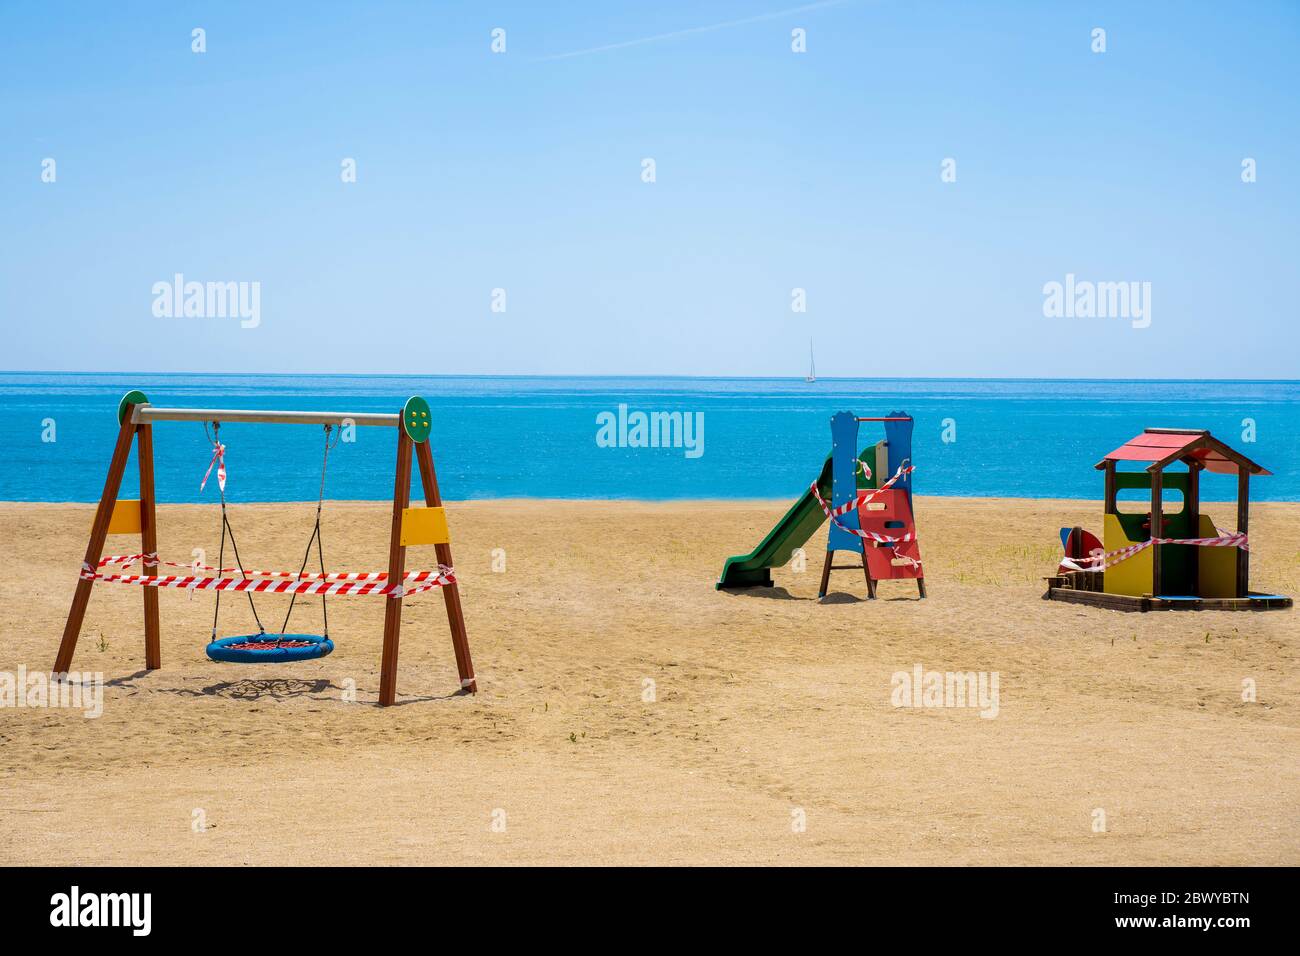 Parco giochi chiuso su una spiaggia a causa della pandemia COVID-19. Ruotare e far scorrere con nastro di protezione. Foto Stock